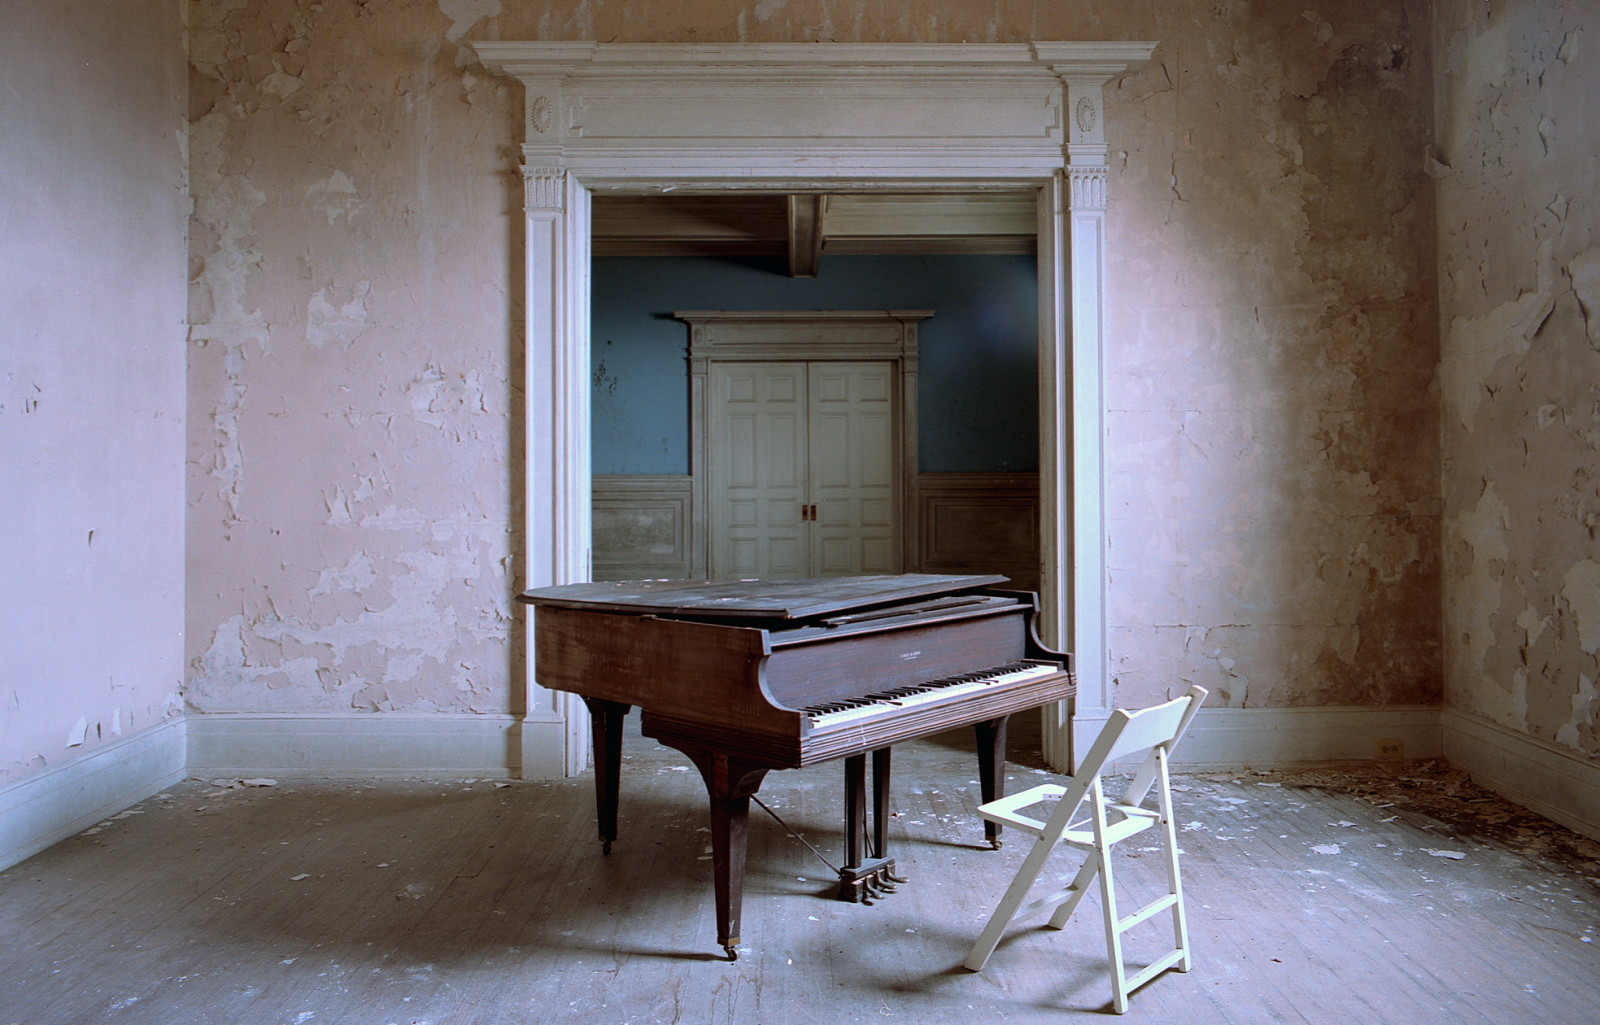 Âm nhạc, cái ghế, đàn piano